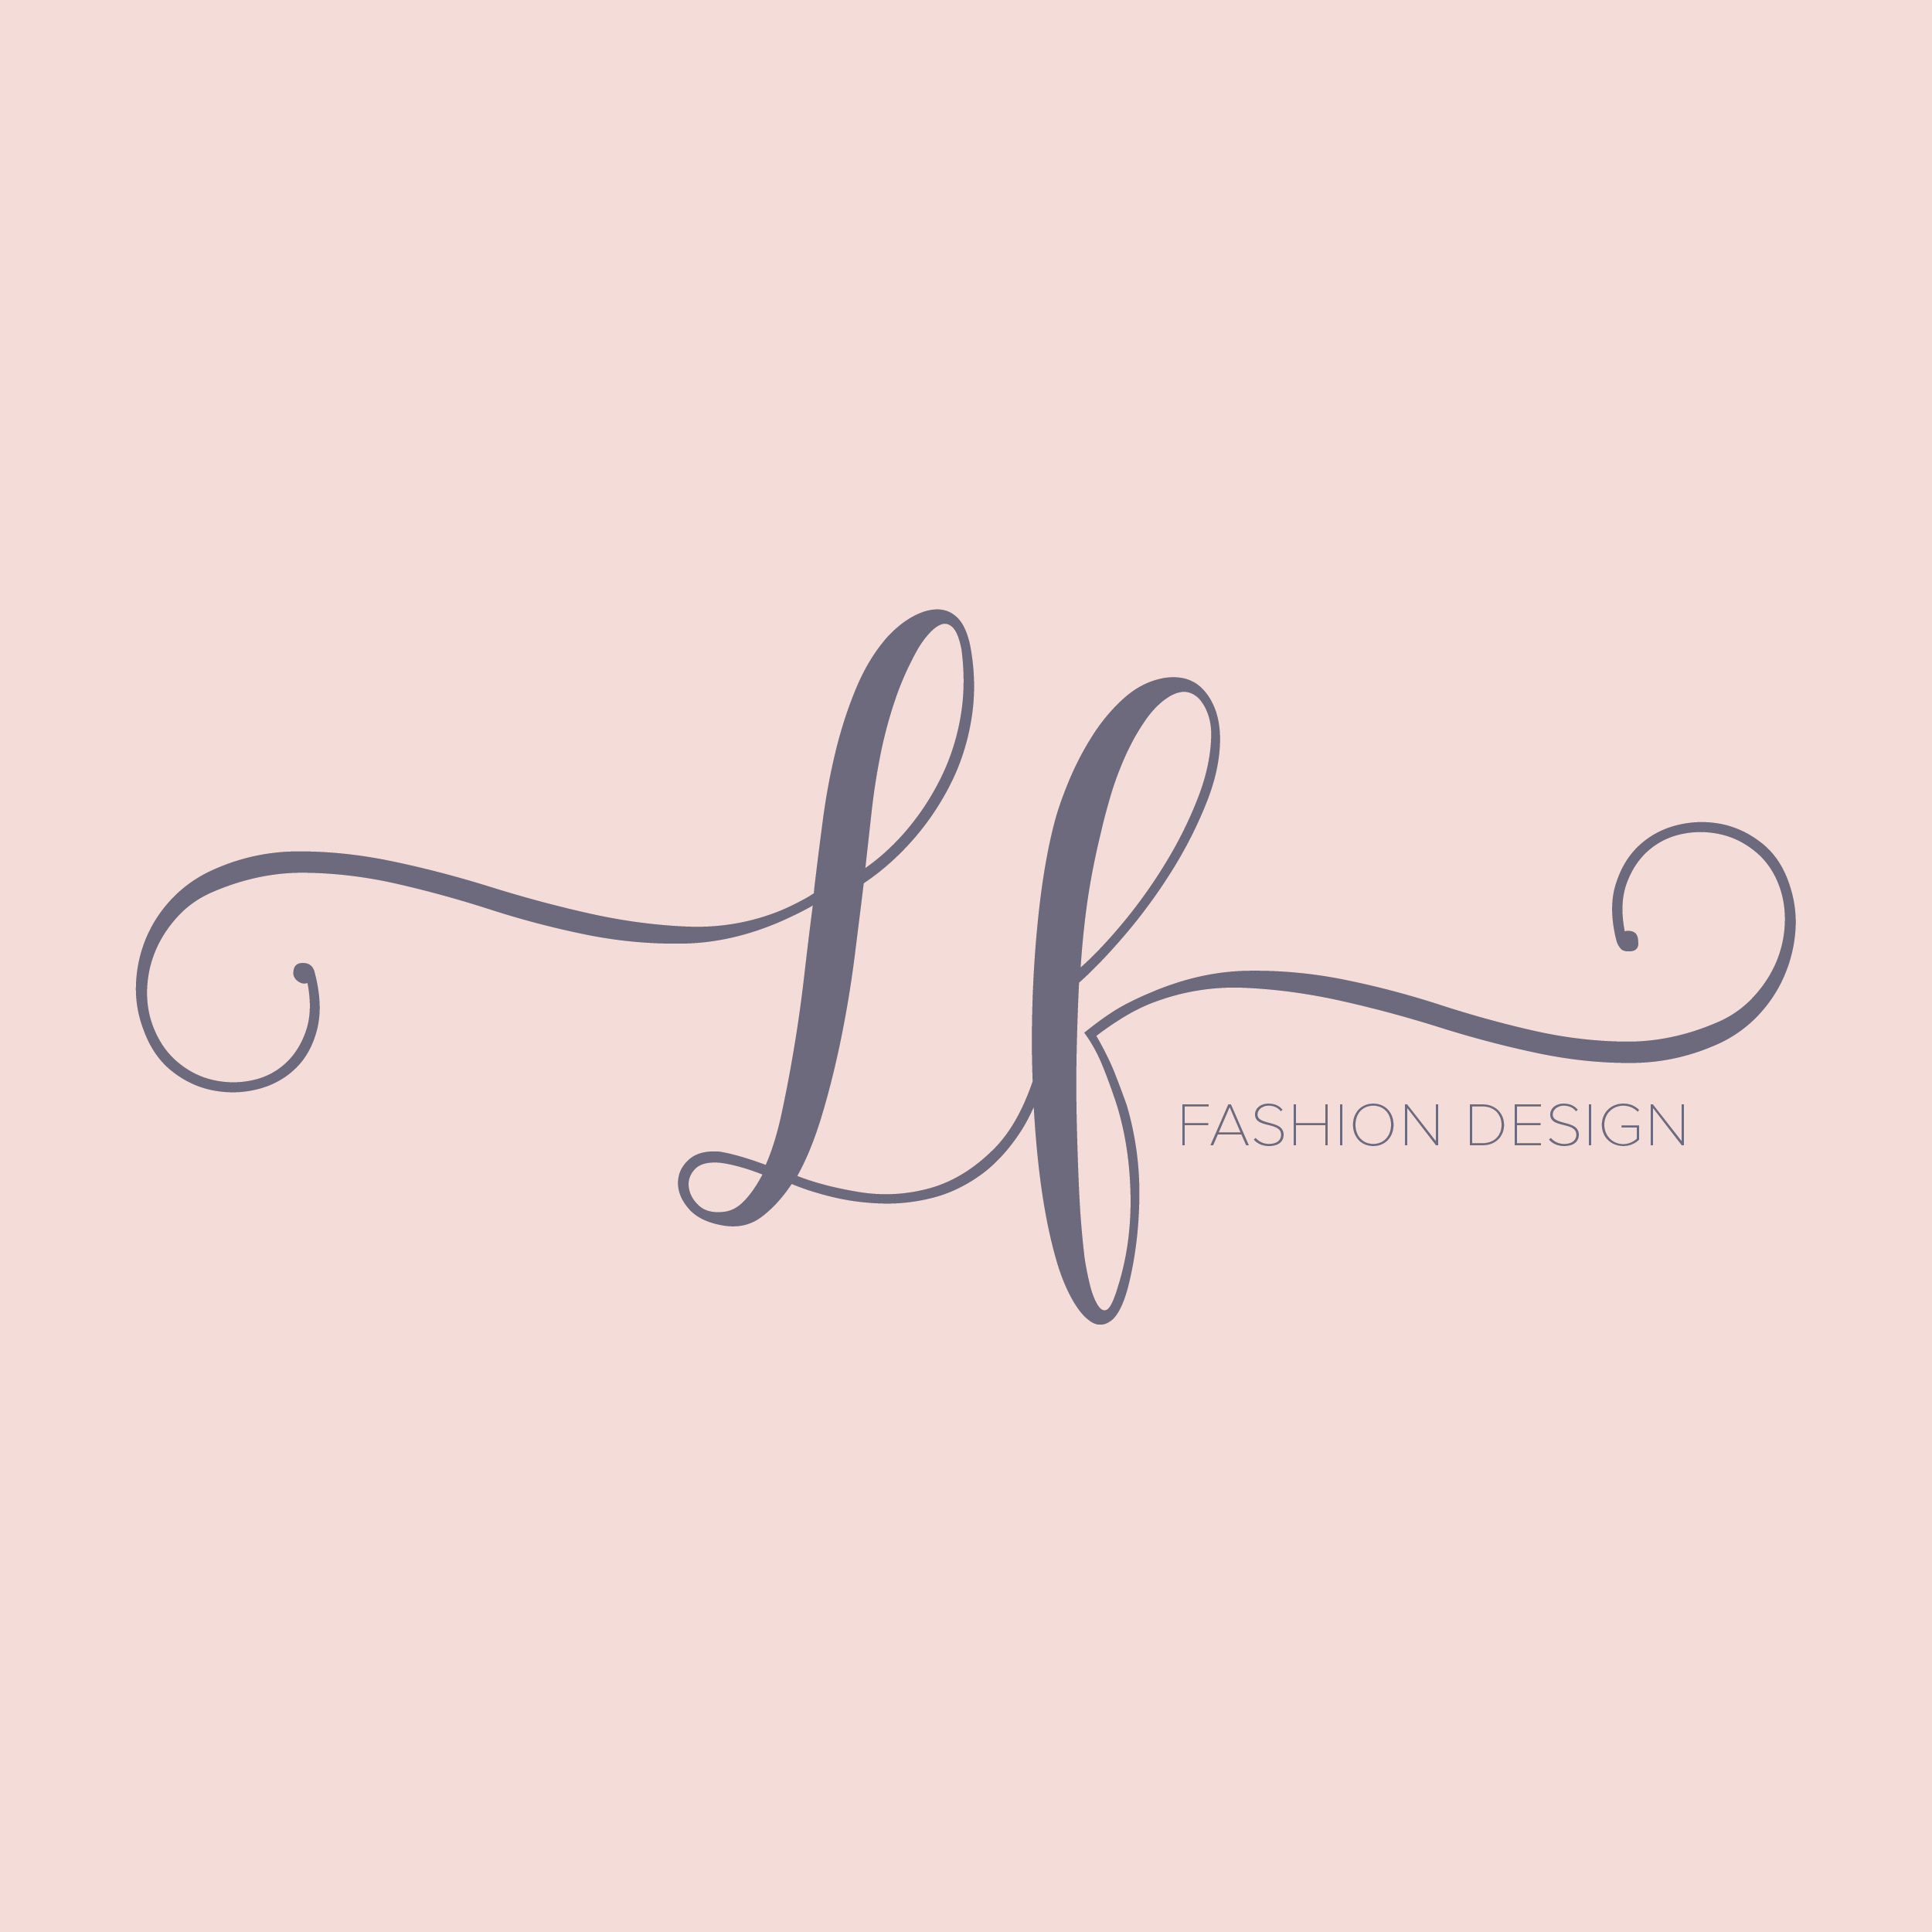 LF fashion design logo